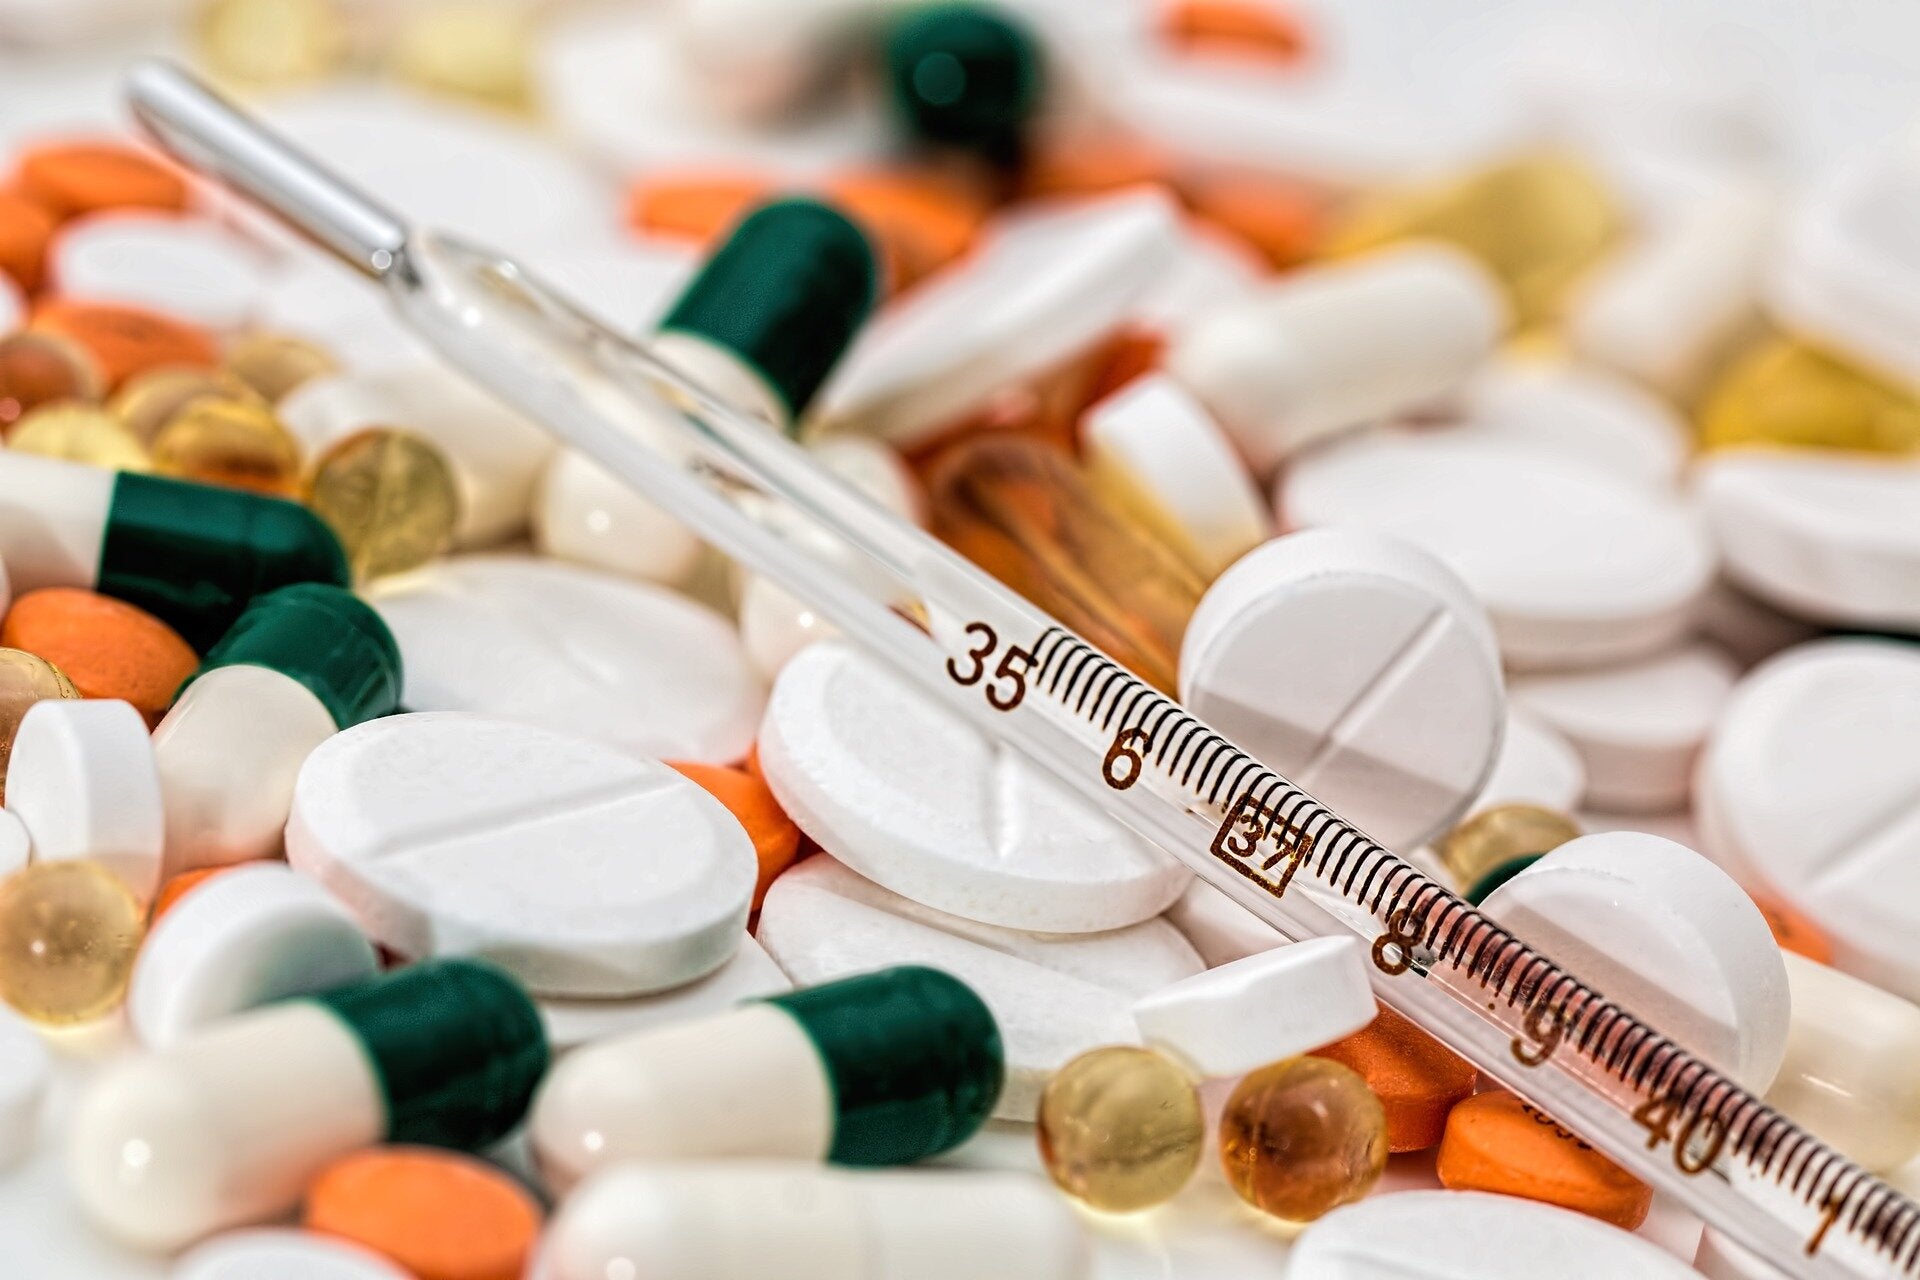 هيئة الدواء المصرية تحذر من استخدام الإسبرين ومضادات التجلط في علاج كورونا “تؤدي لآثار جانبية خطيرة”